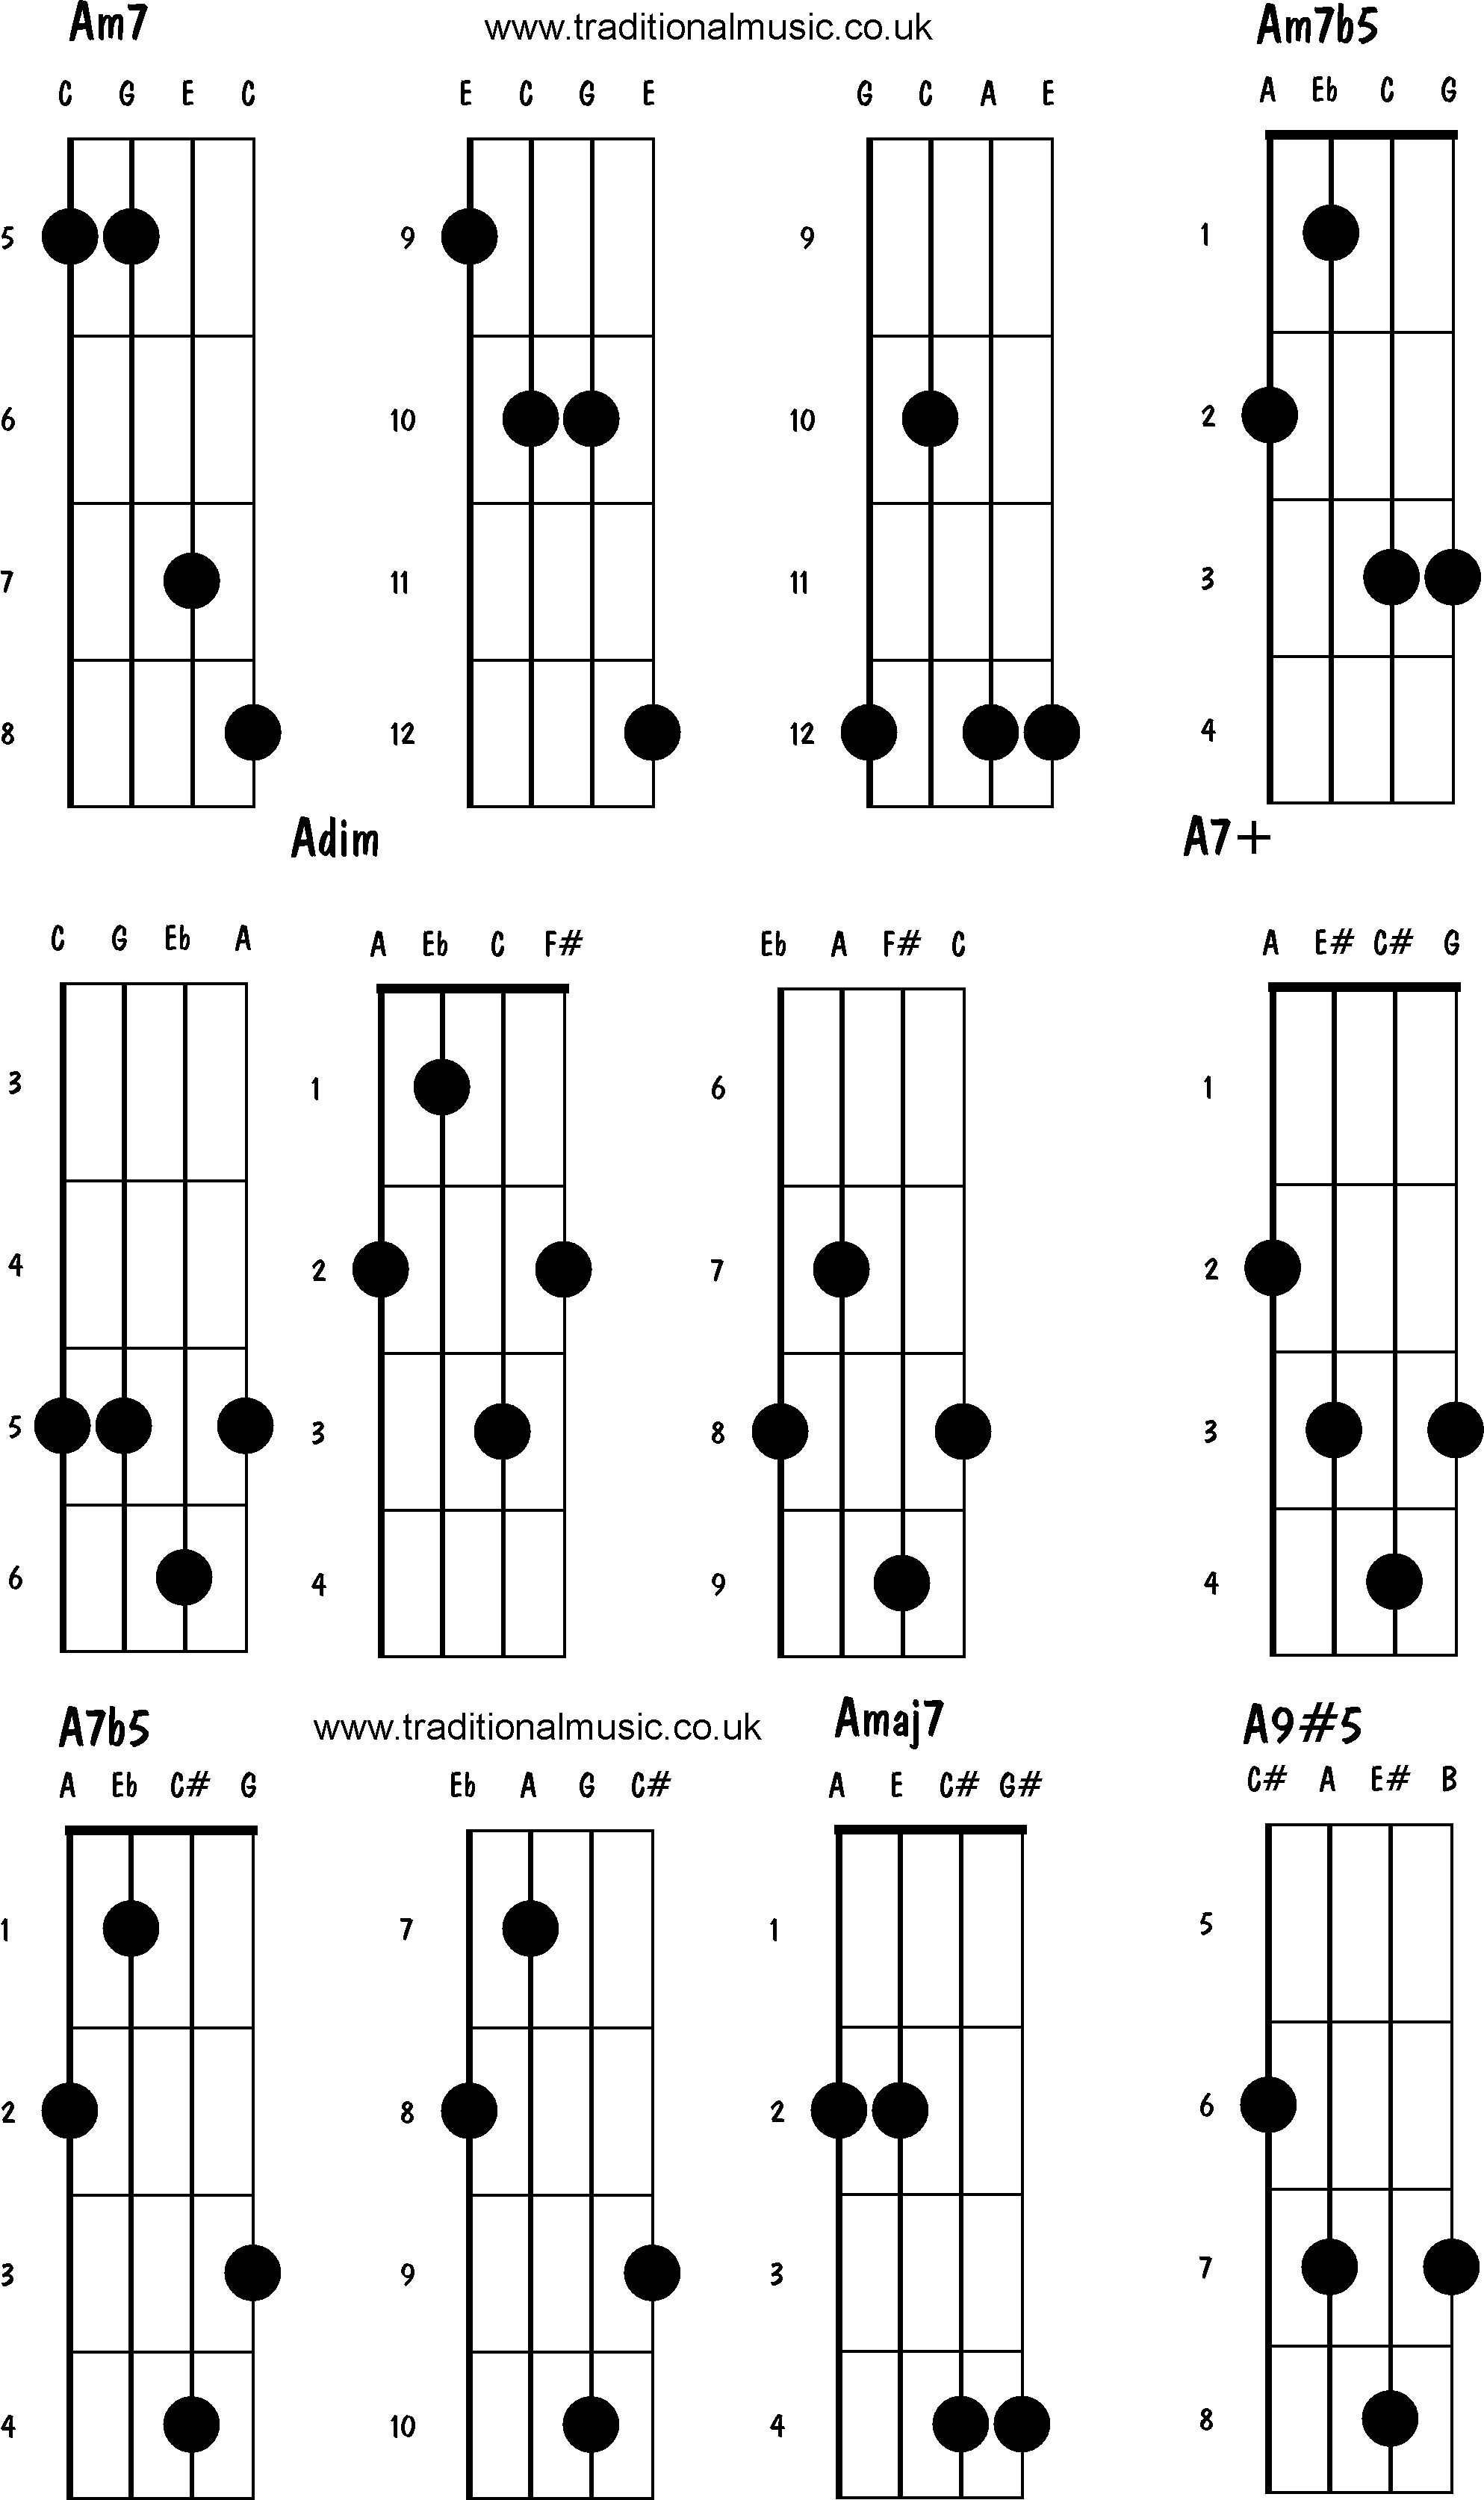 Advanced mandolin chords:Am7, Am7b5. Adim, A7+, A7b5, Amaj7, A9#5